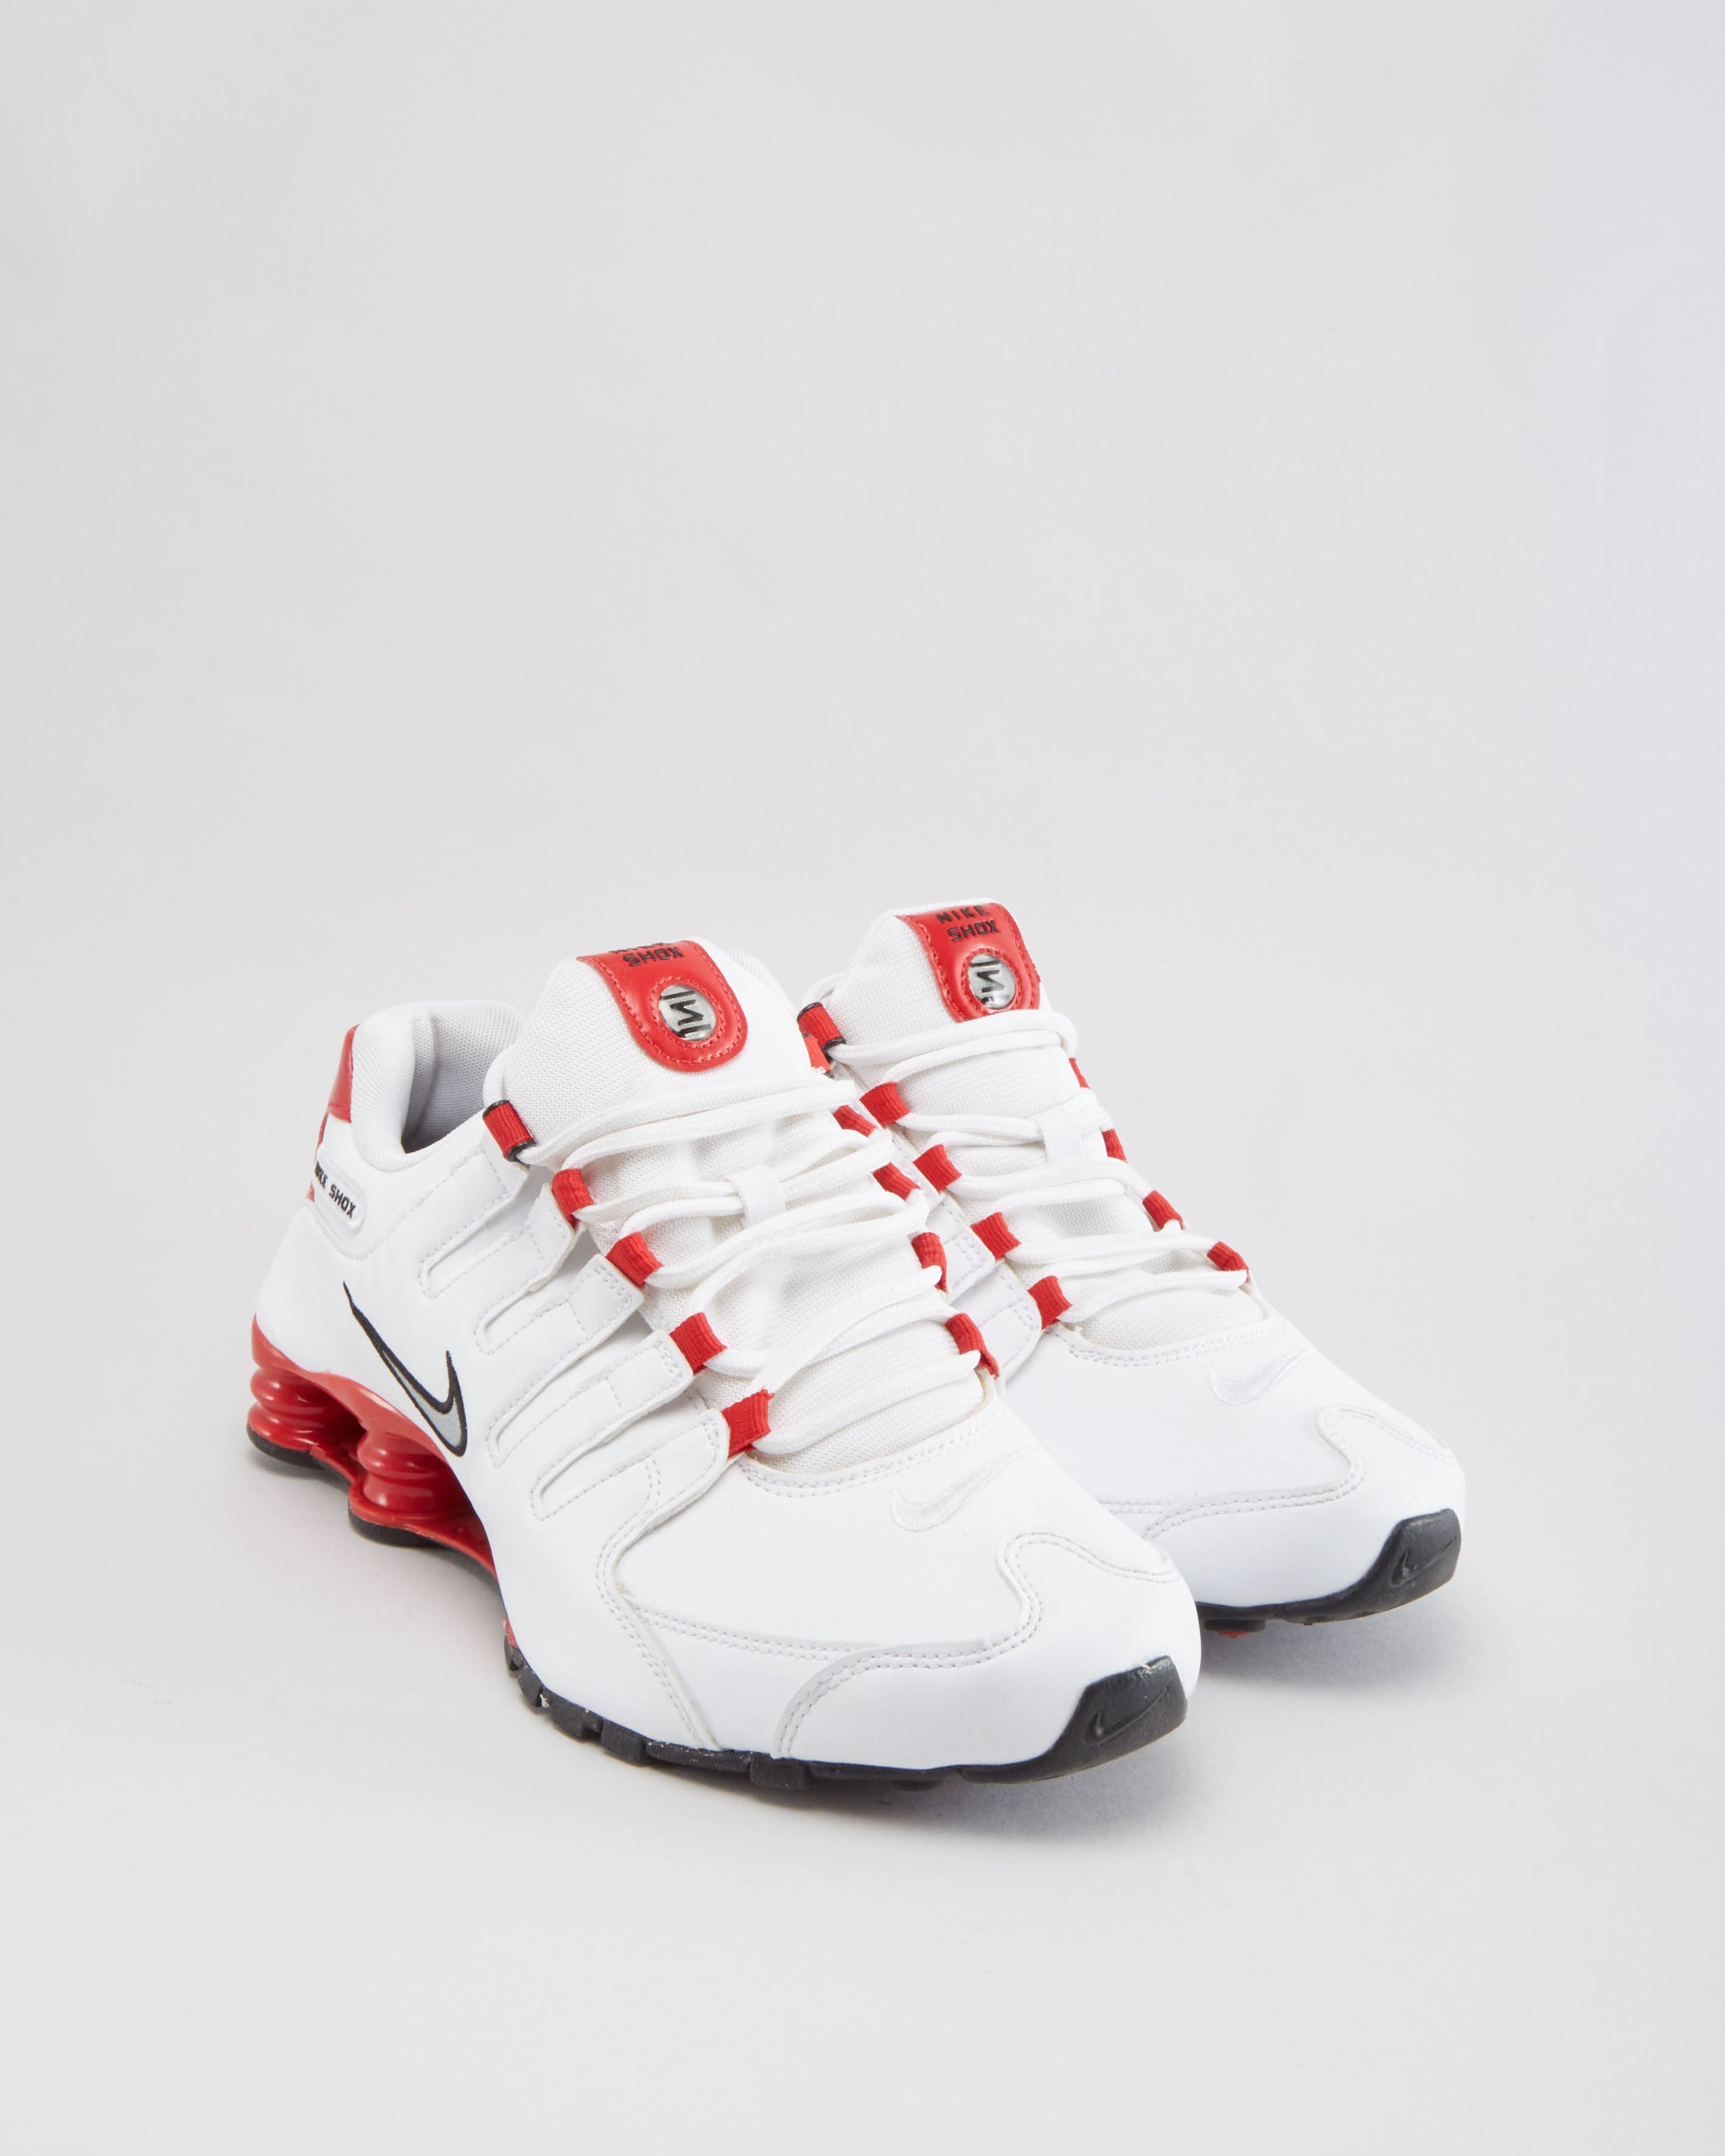 Nike Shox Shoes - UK 8.5